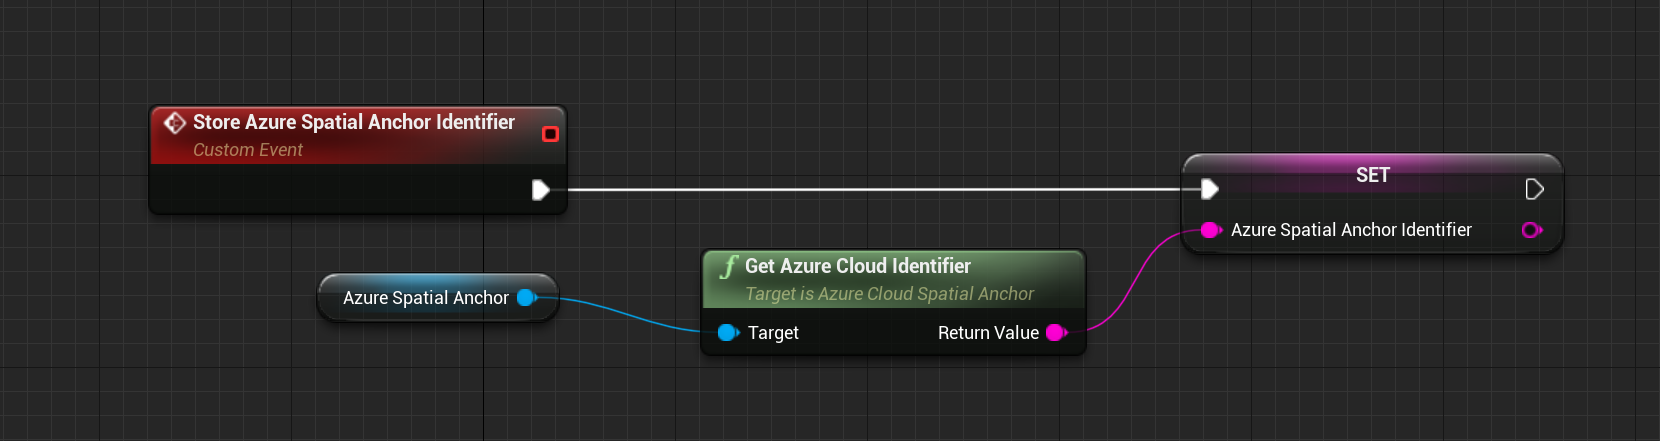 Blueprint de evento personalizado Armazenar identificador de Âncora Espacial do Azure com a função Obter identificador de nuvem do Azure